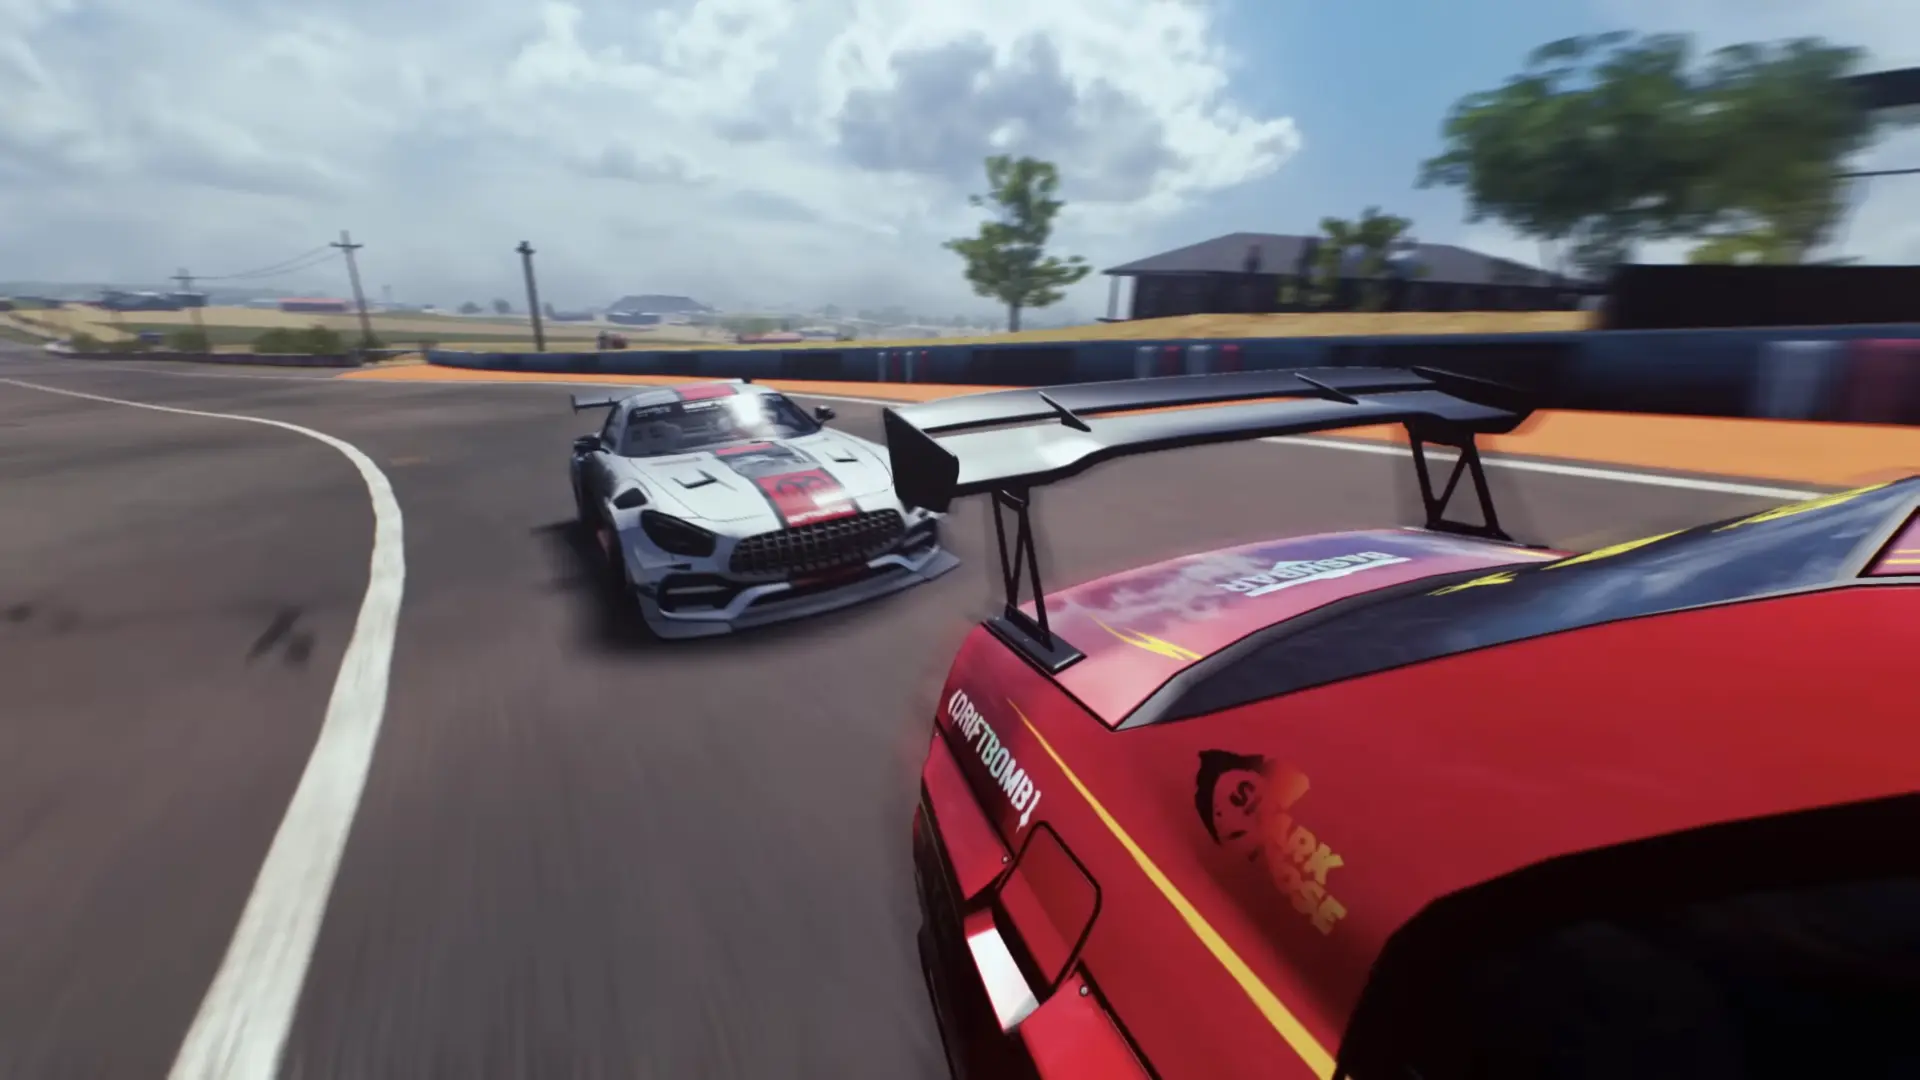 CarX Drift Racing 2 mod apk